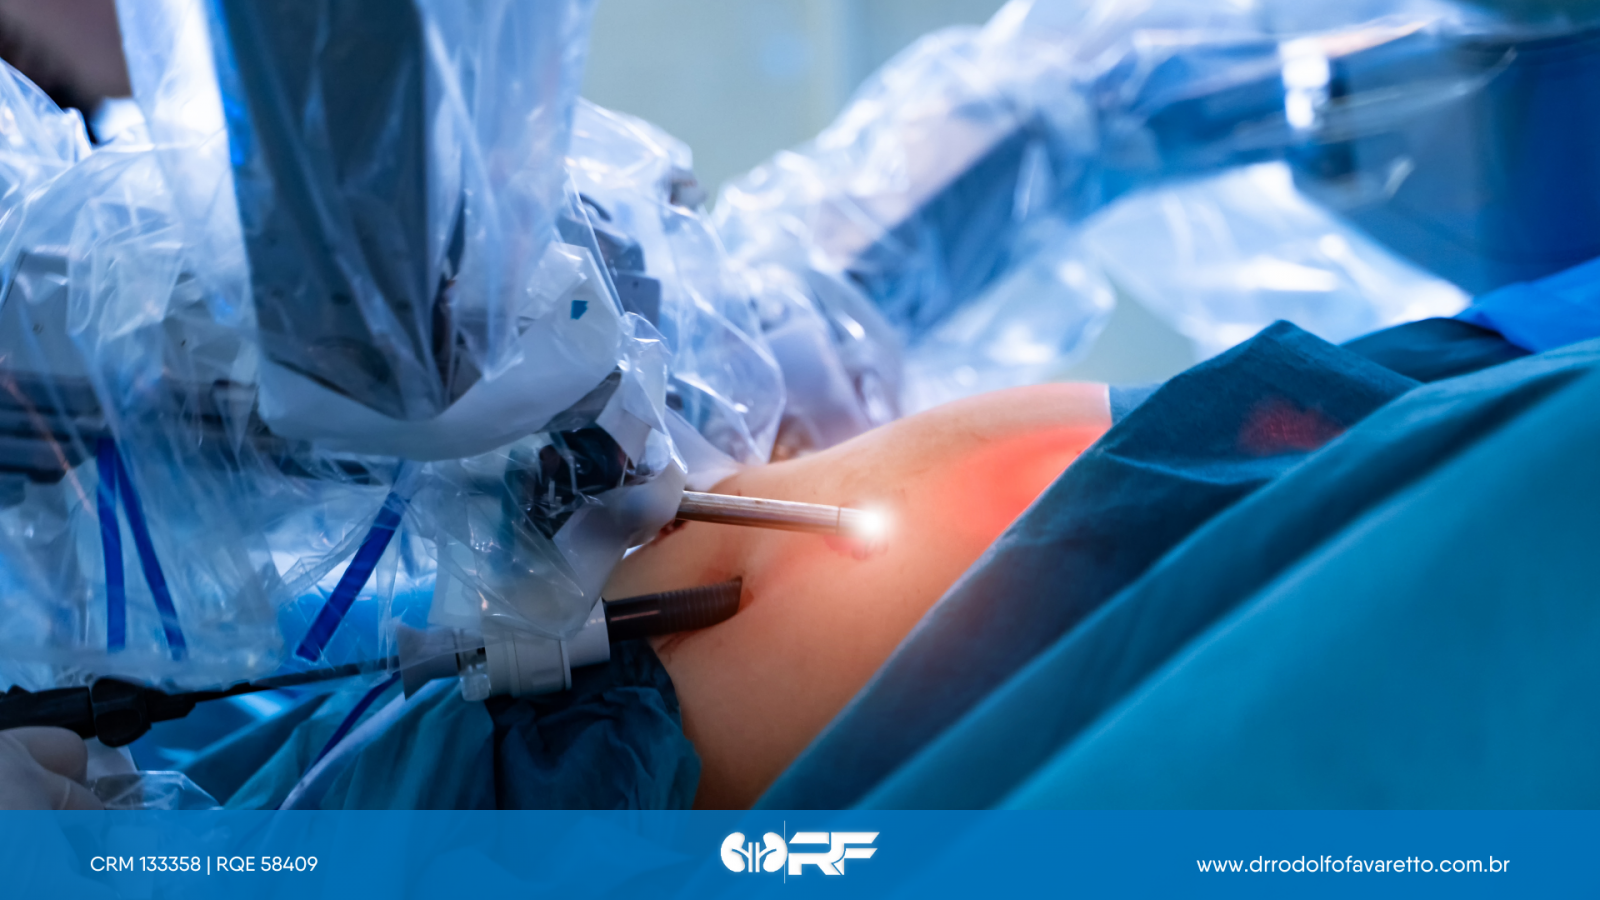 Cirurgia robótica na urologia